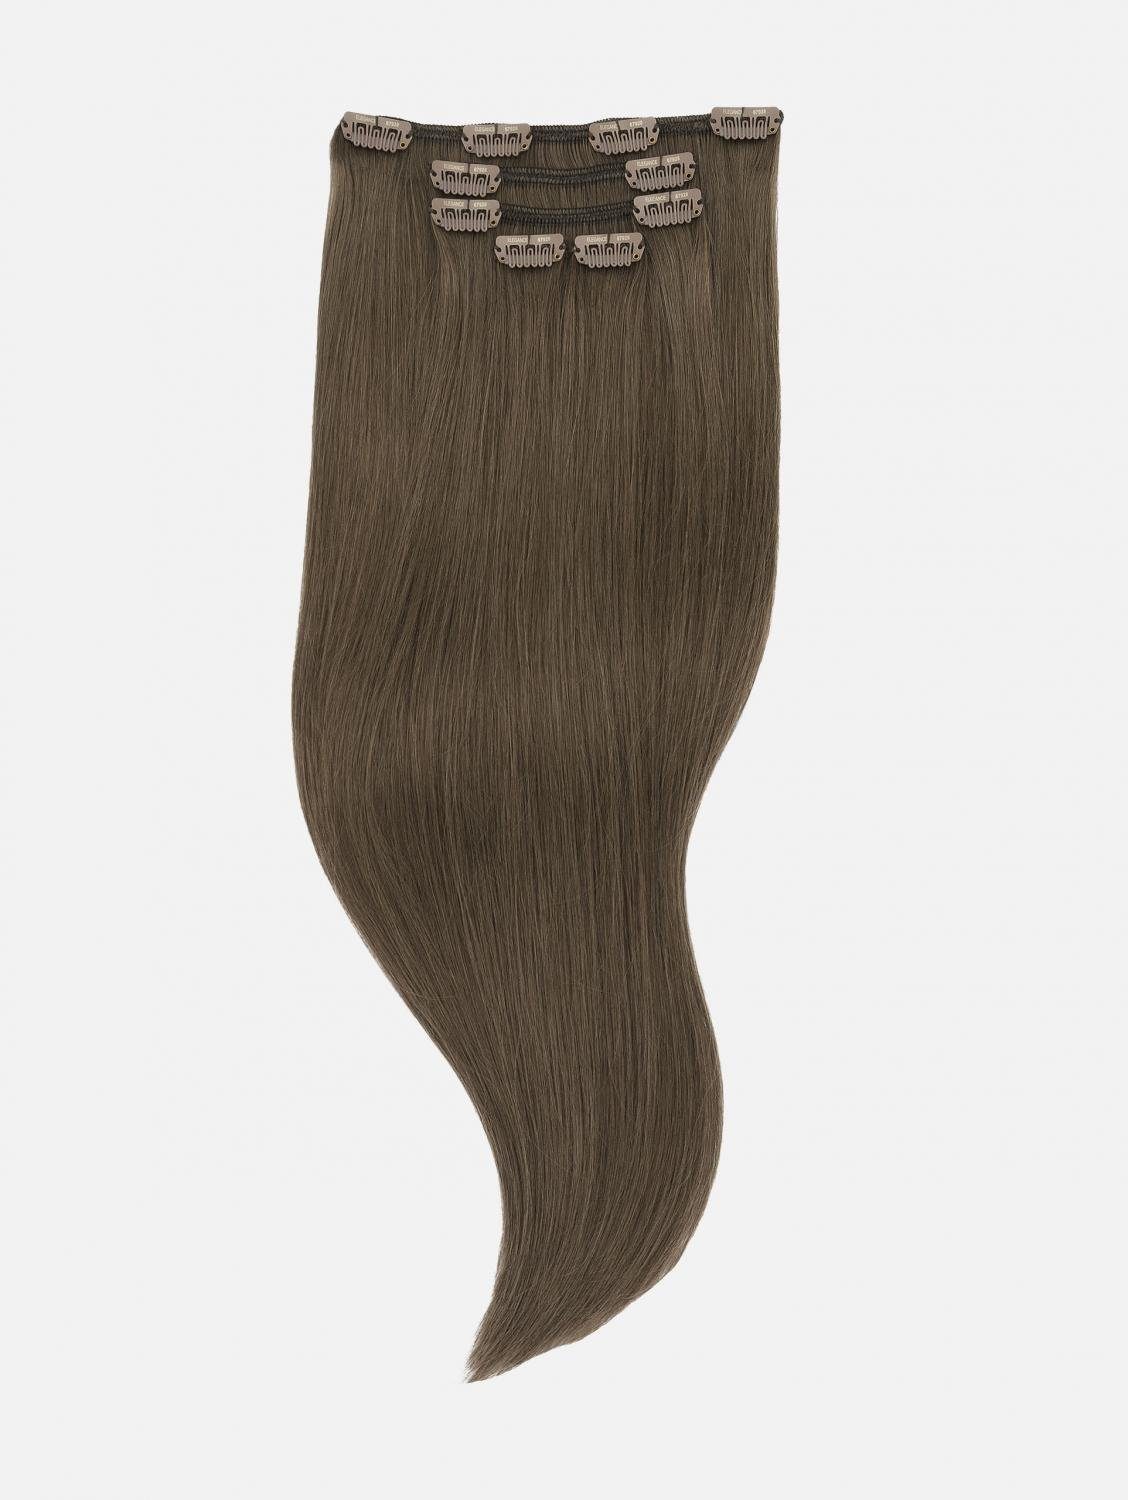 EH Brown) Ash NATURAL Echthaar-Extension - 40cm, Echthaar Seidenglatt - Echthaar Haarverlängerung (Natural 5-teilig Extensions Clip-In 50cm, #5